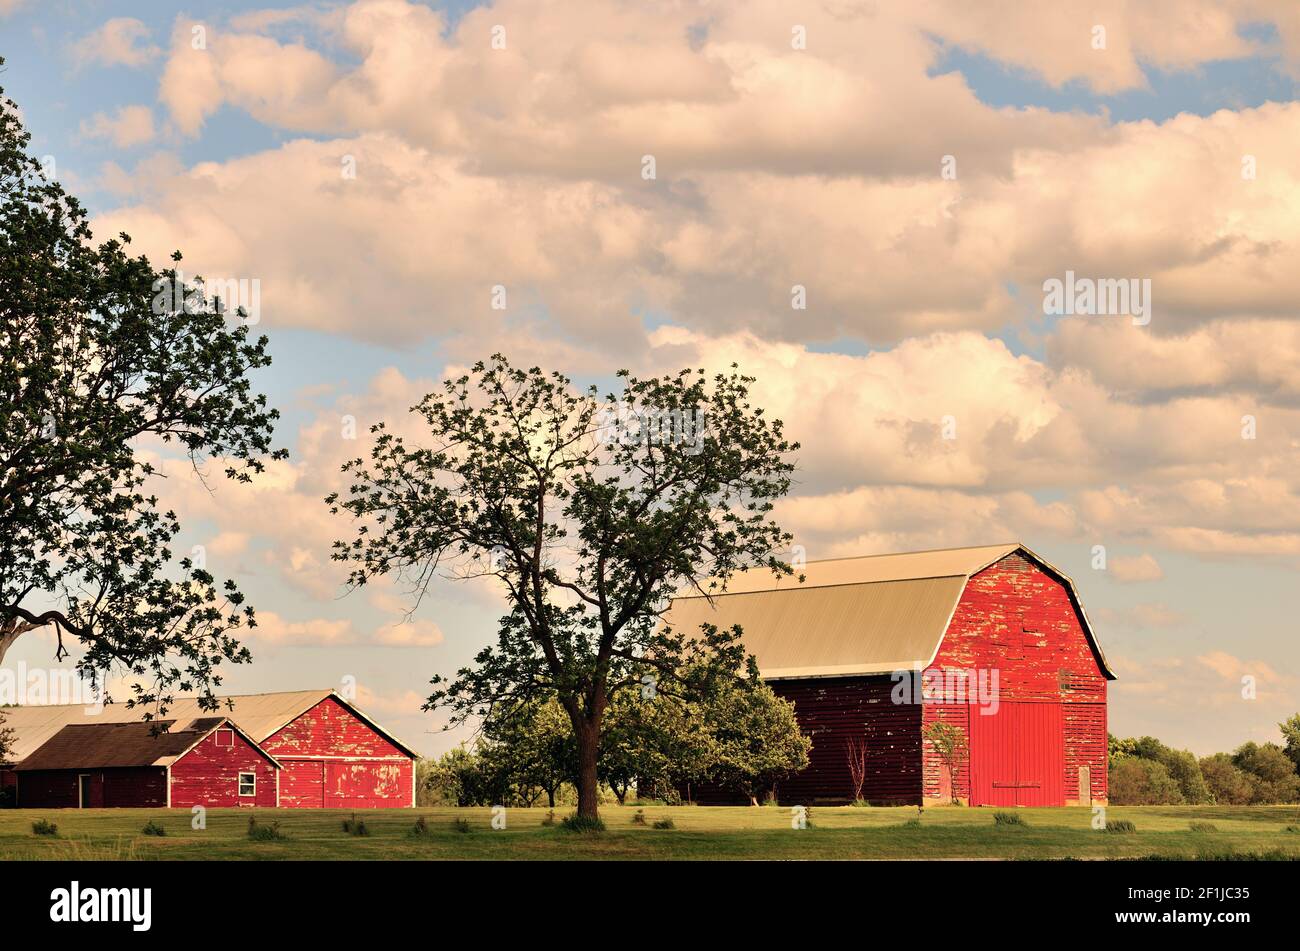 Burlington, Illinois, États-Unis. La grange rouge et les bâtiments de ferme offrent un cadre serein sur une ferme dans le nord-est de l'Illinois. Banque D'Images